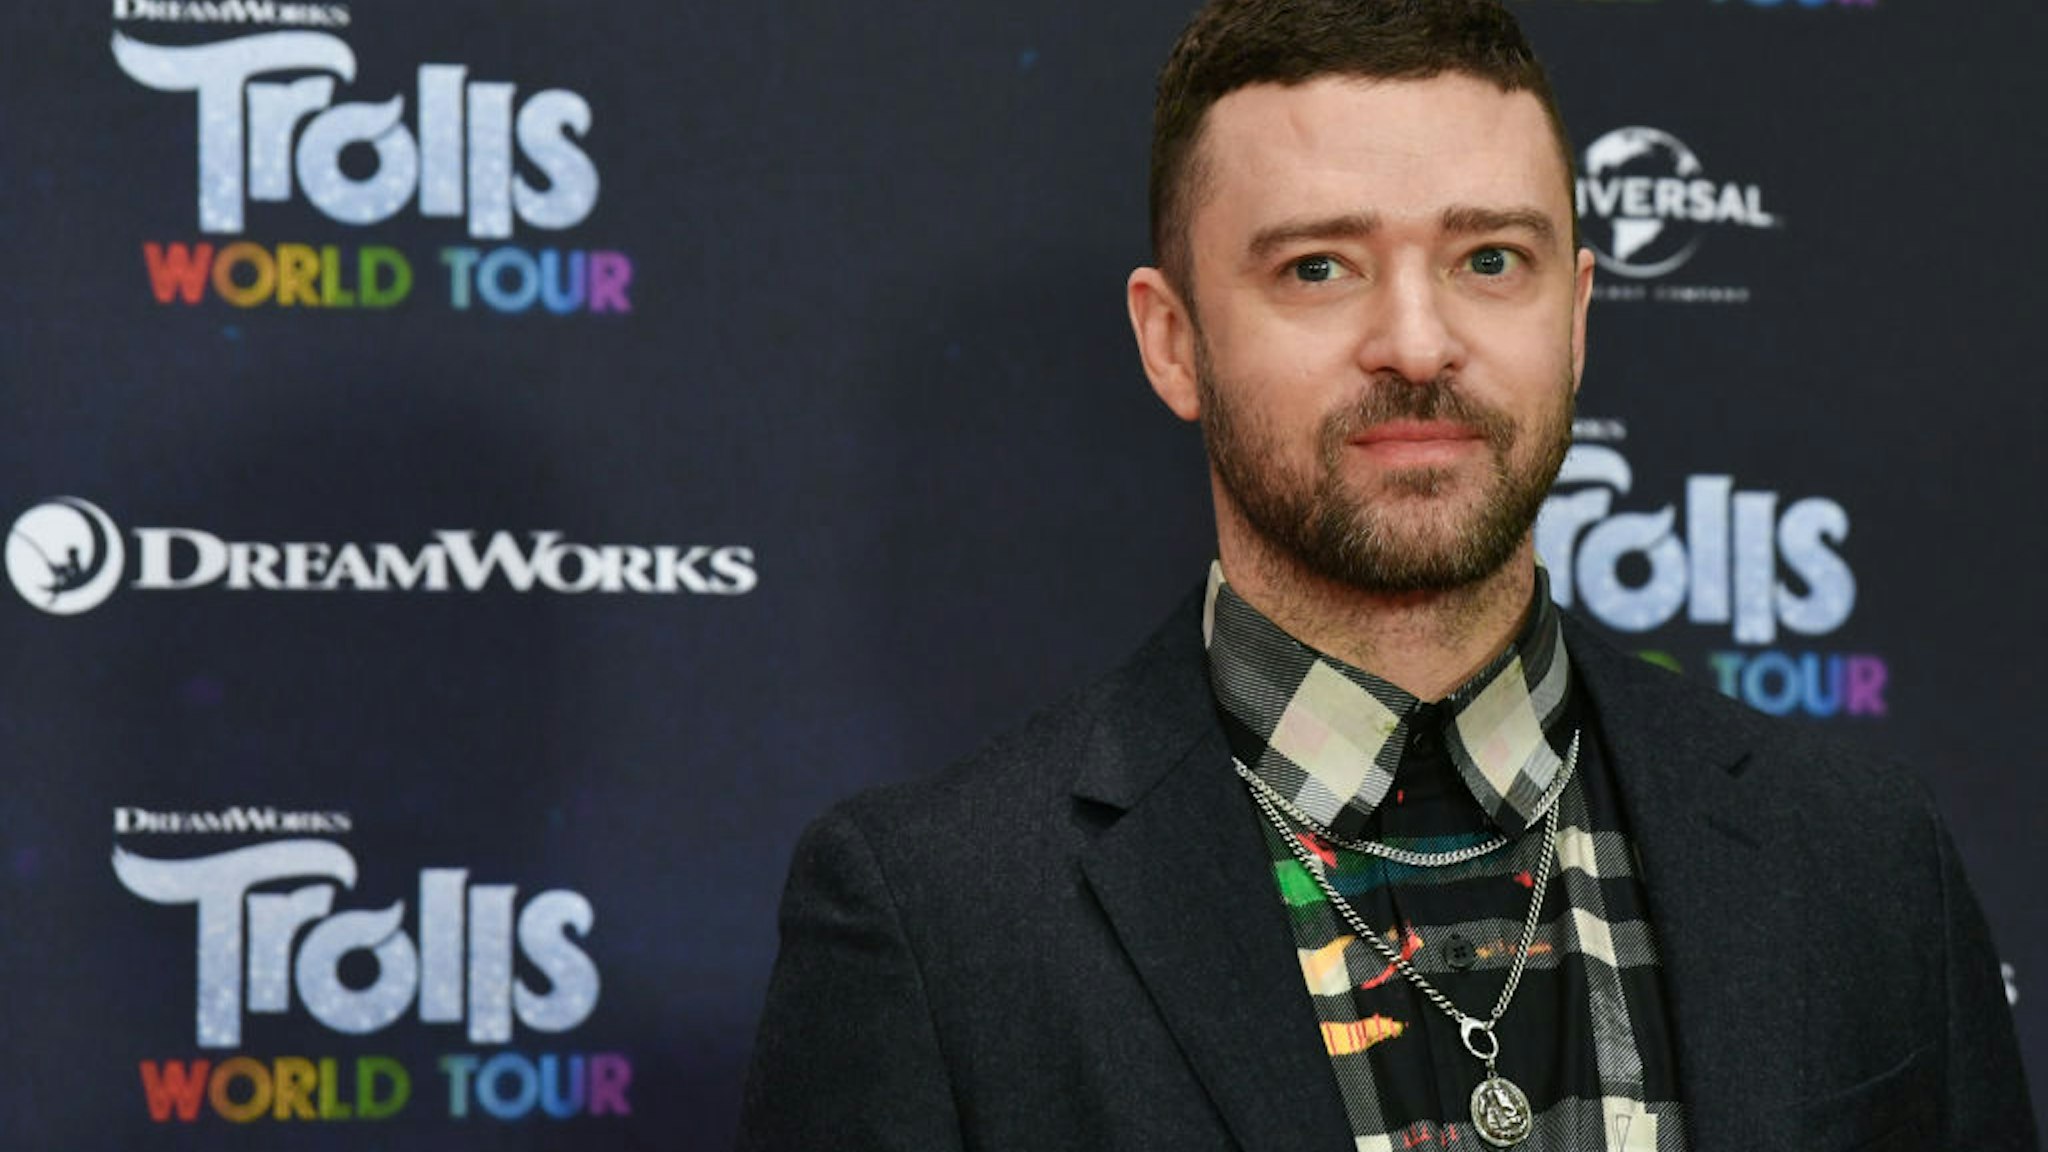 Trolls World Tour Justin Timberlake